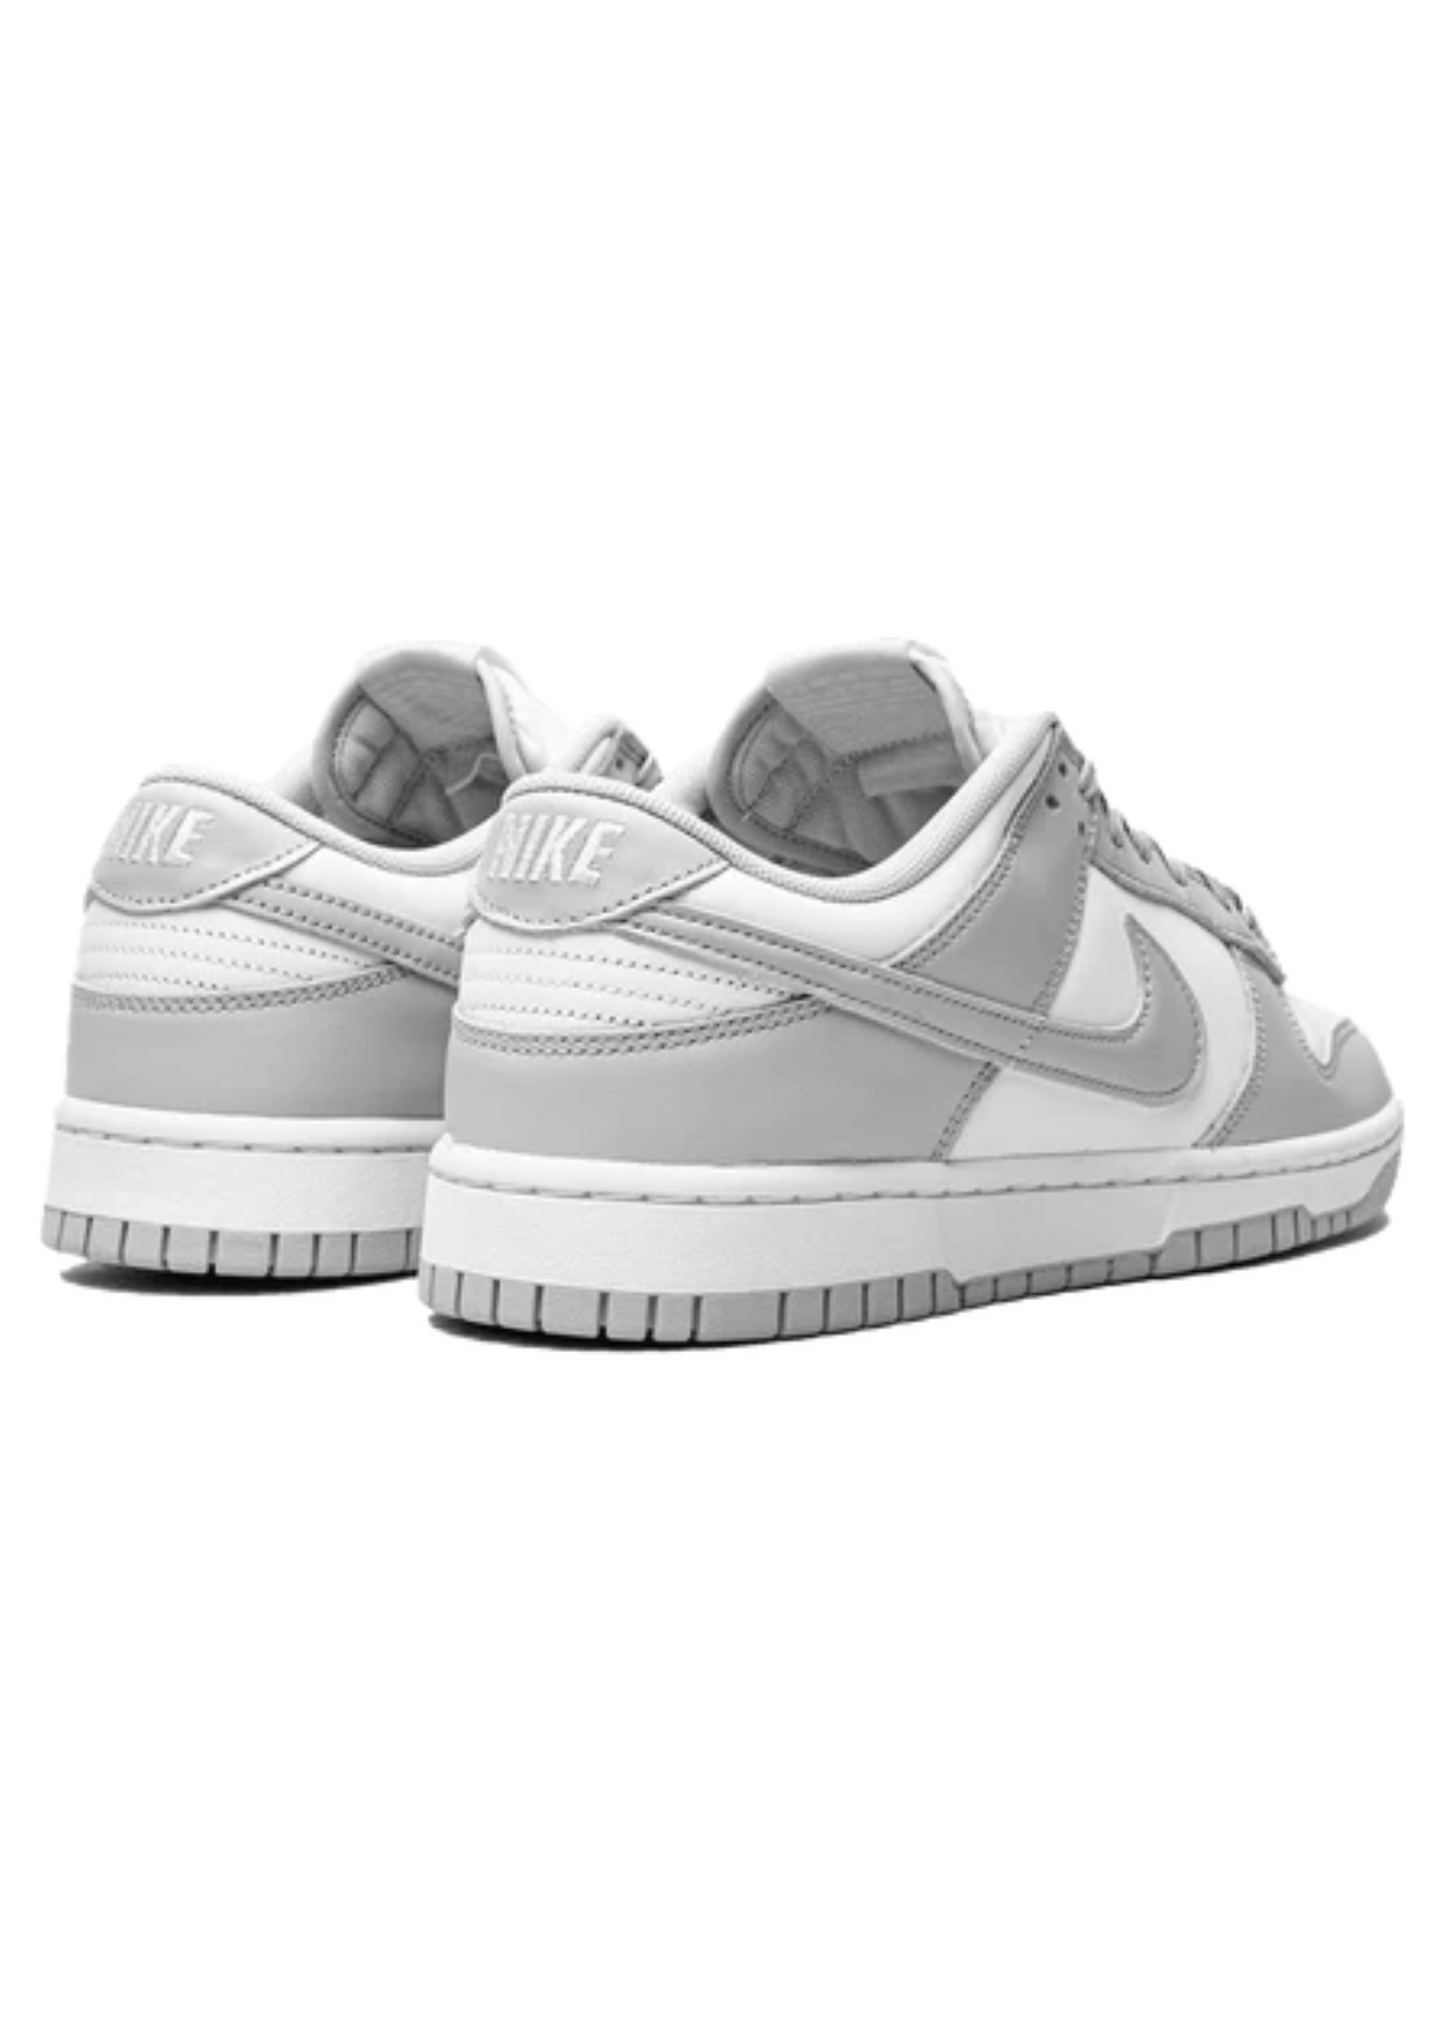 Nike Dunk Low "Grey White"